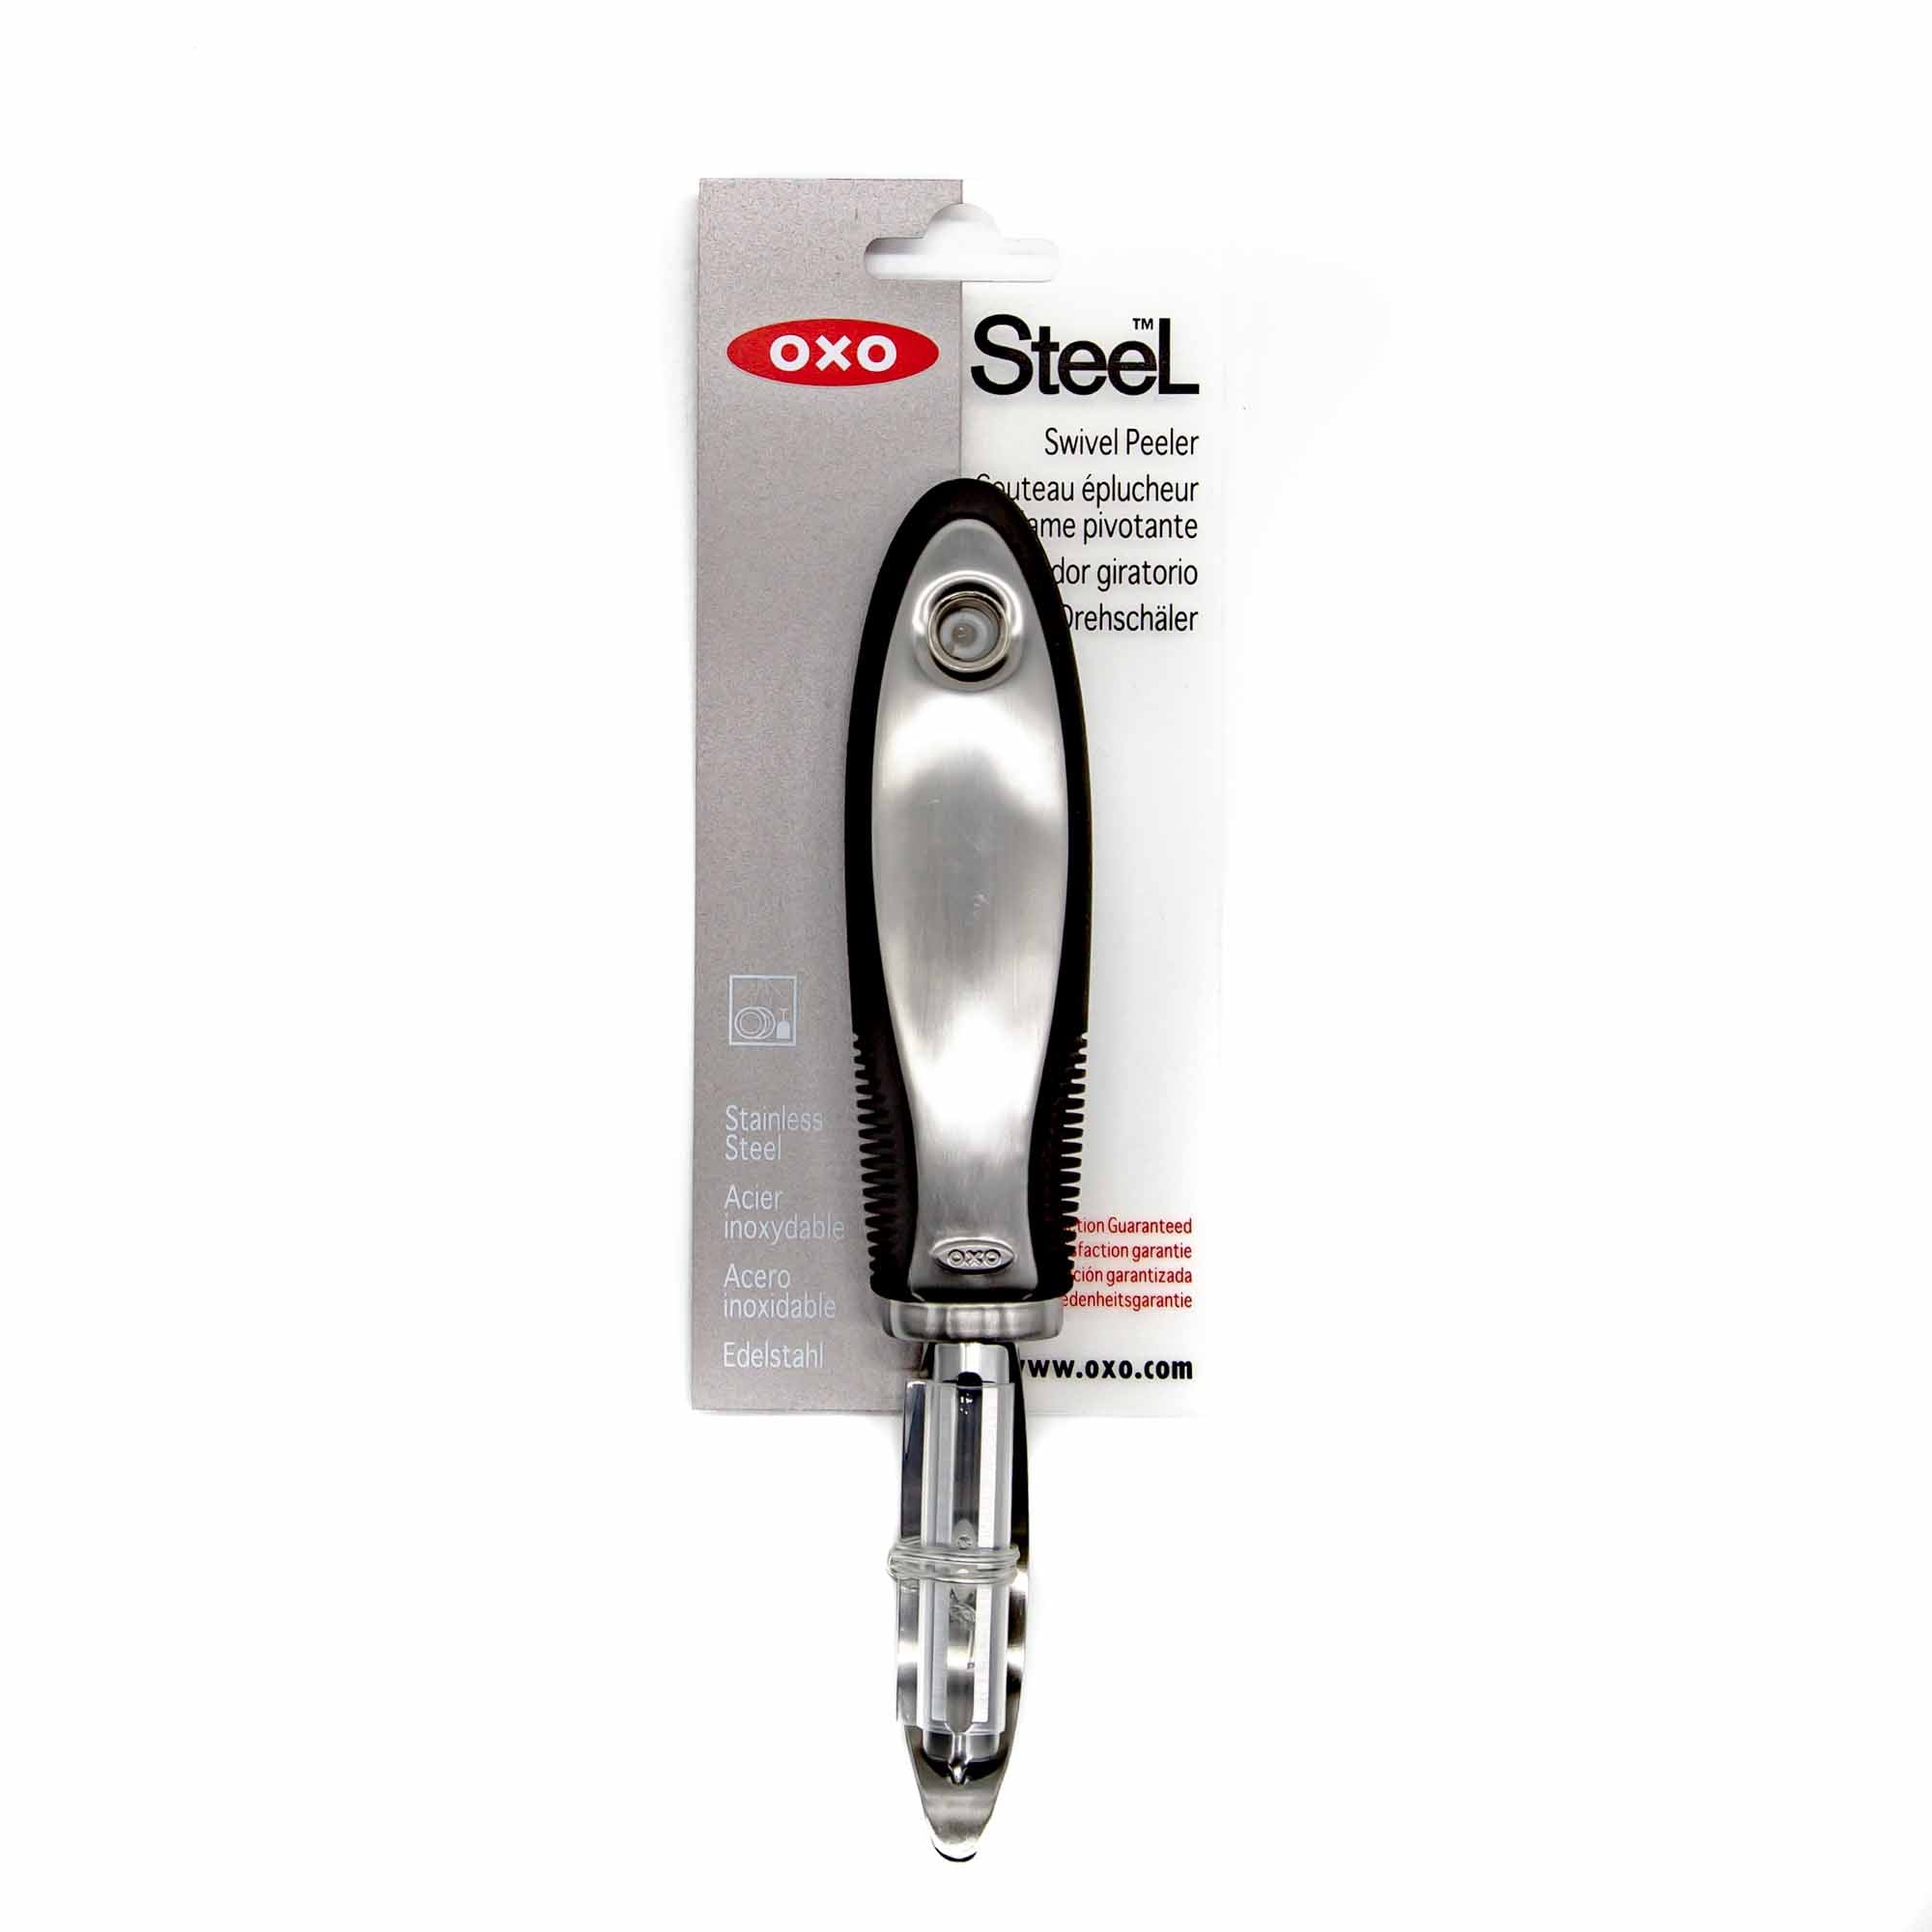 OXO Steel Swivel Peeler